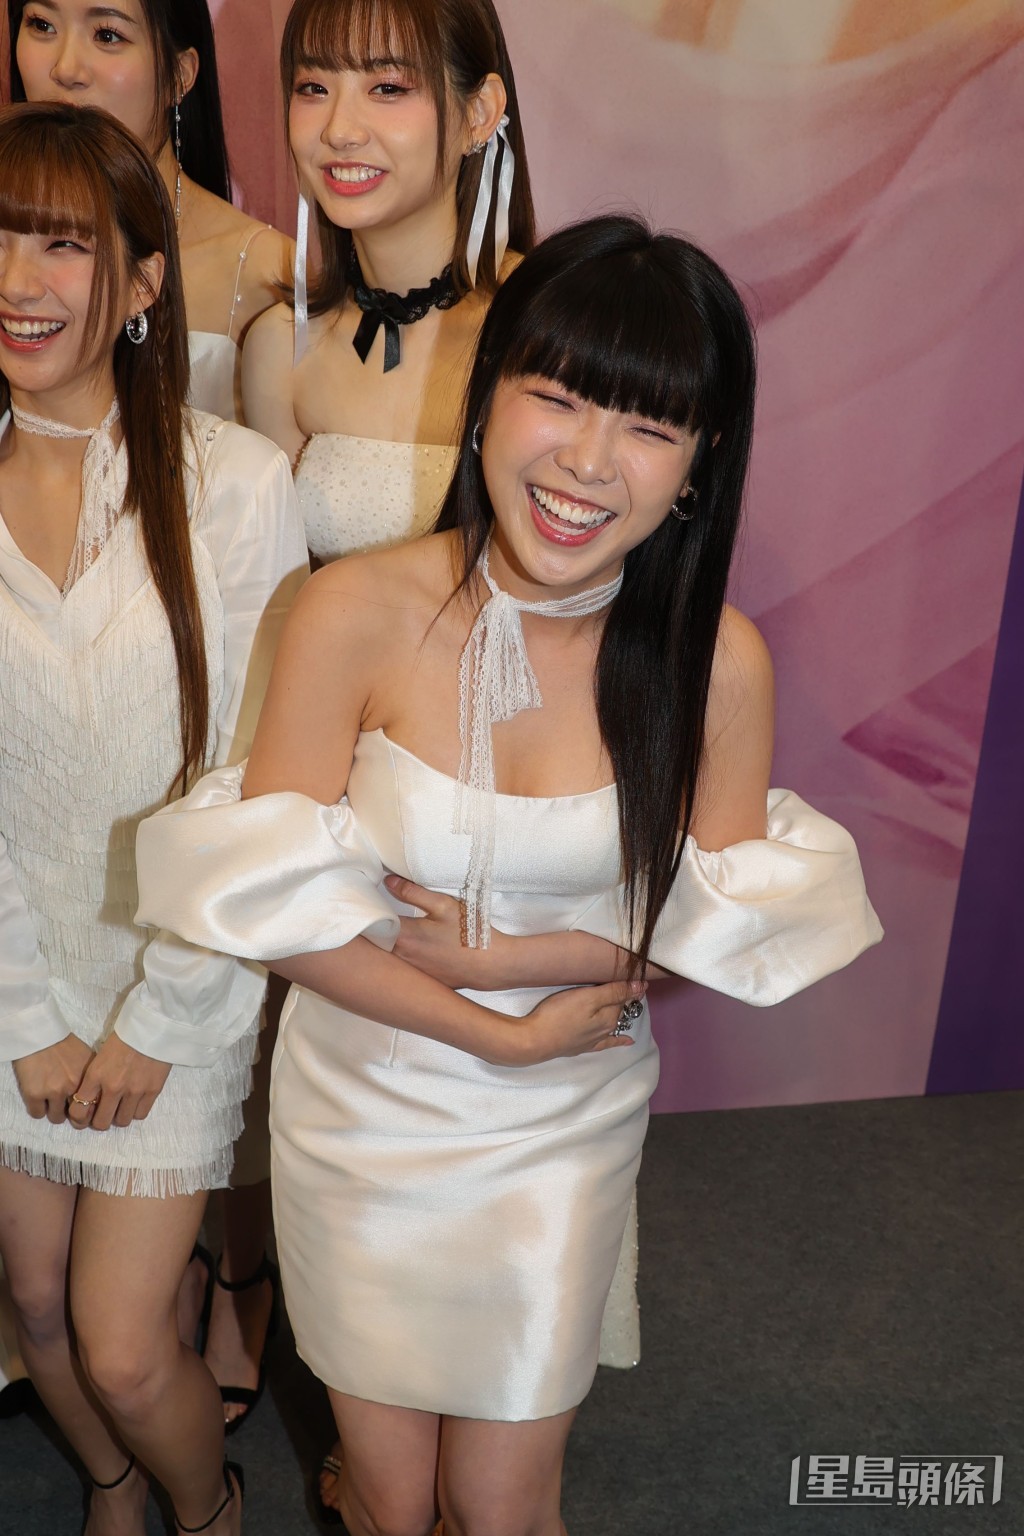 活动上Meimei以低胸裙抢镜。